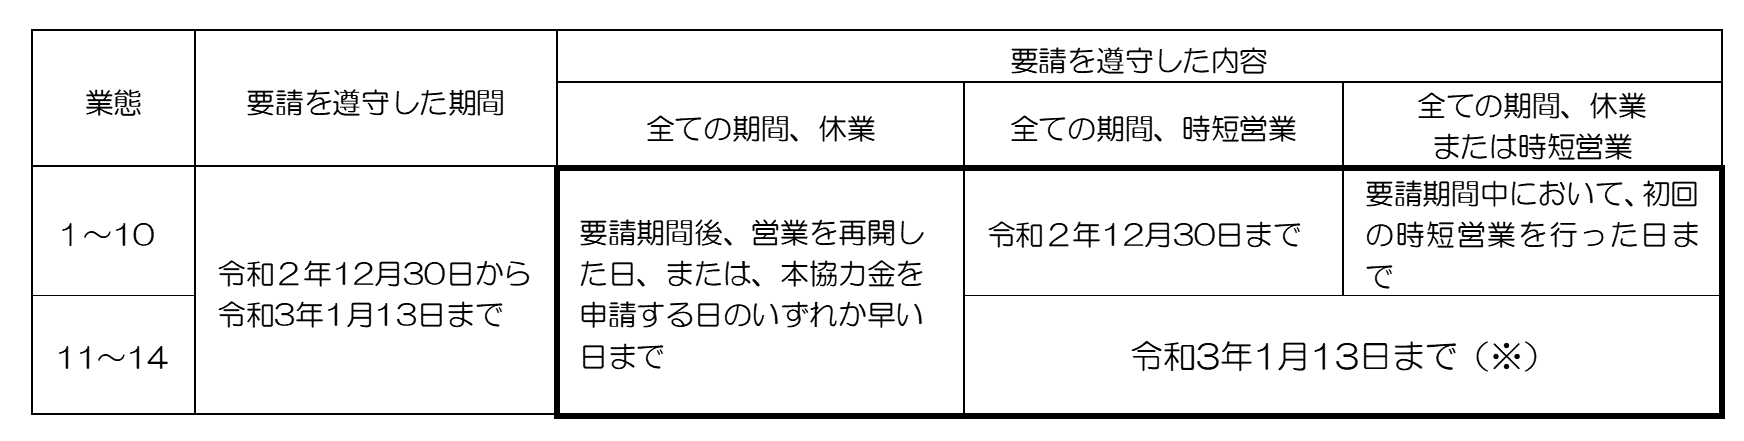 協力 申請 大阪 時短 市 営業 金